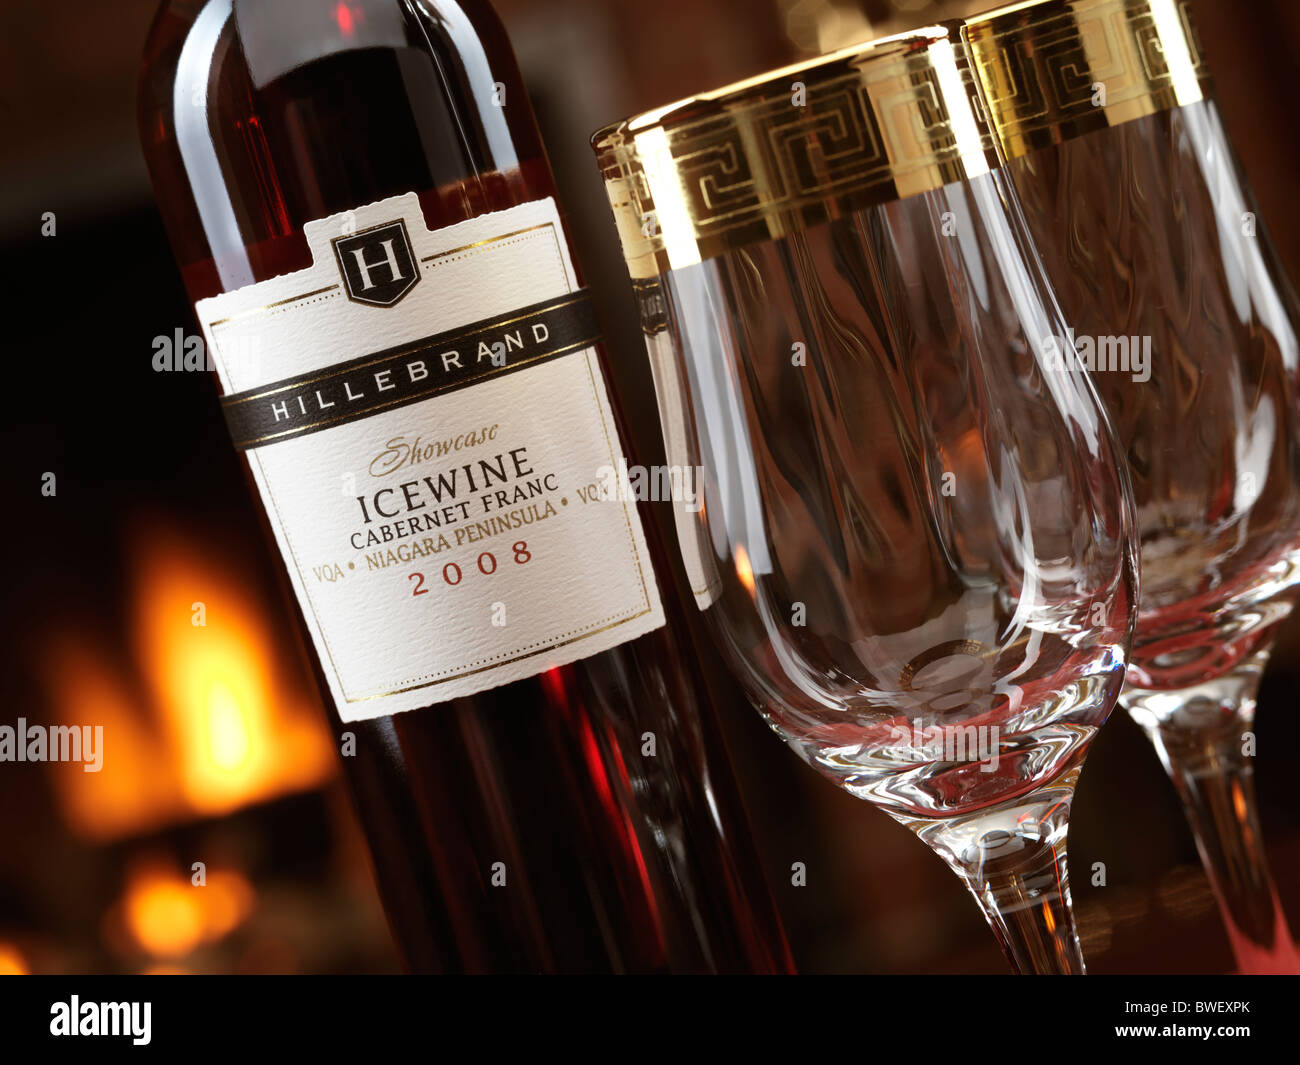 Bottiglia di Rosso Icewine Cabernet Franc da Hillebrand e due bicchieri di vino davanti a un caminetto Foto Stock